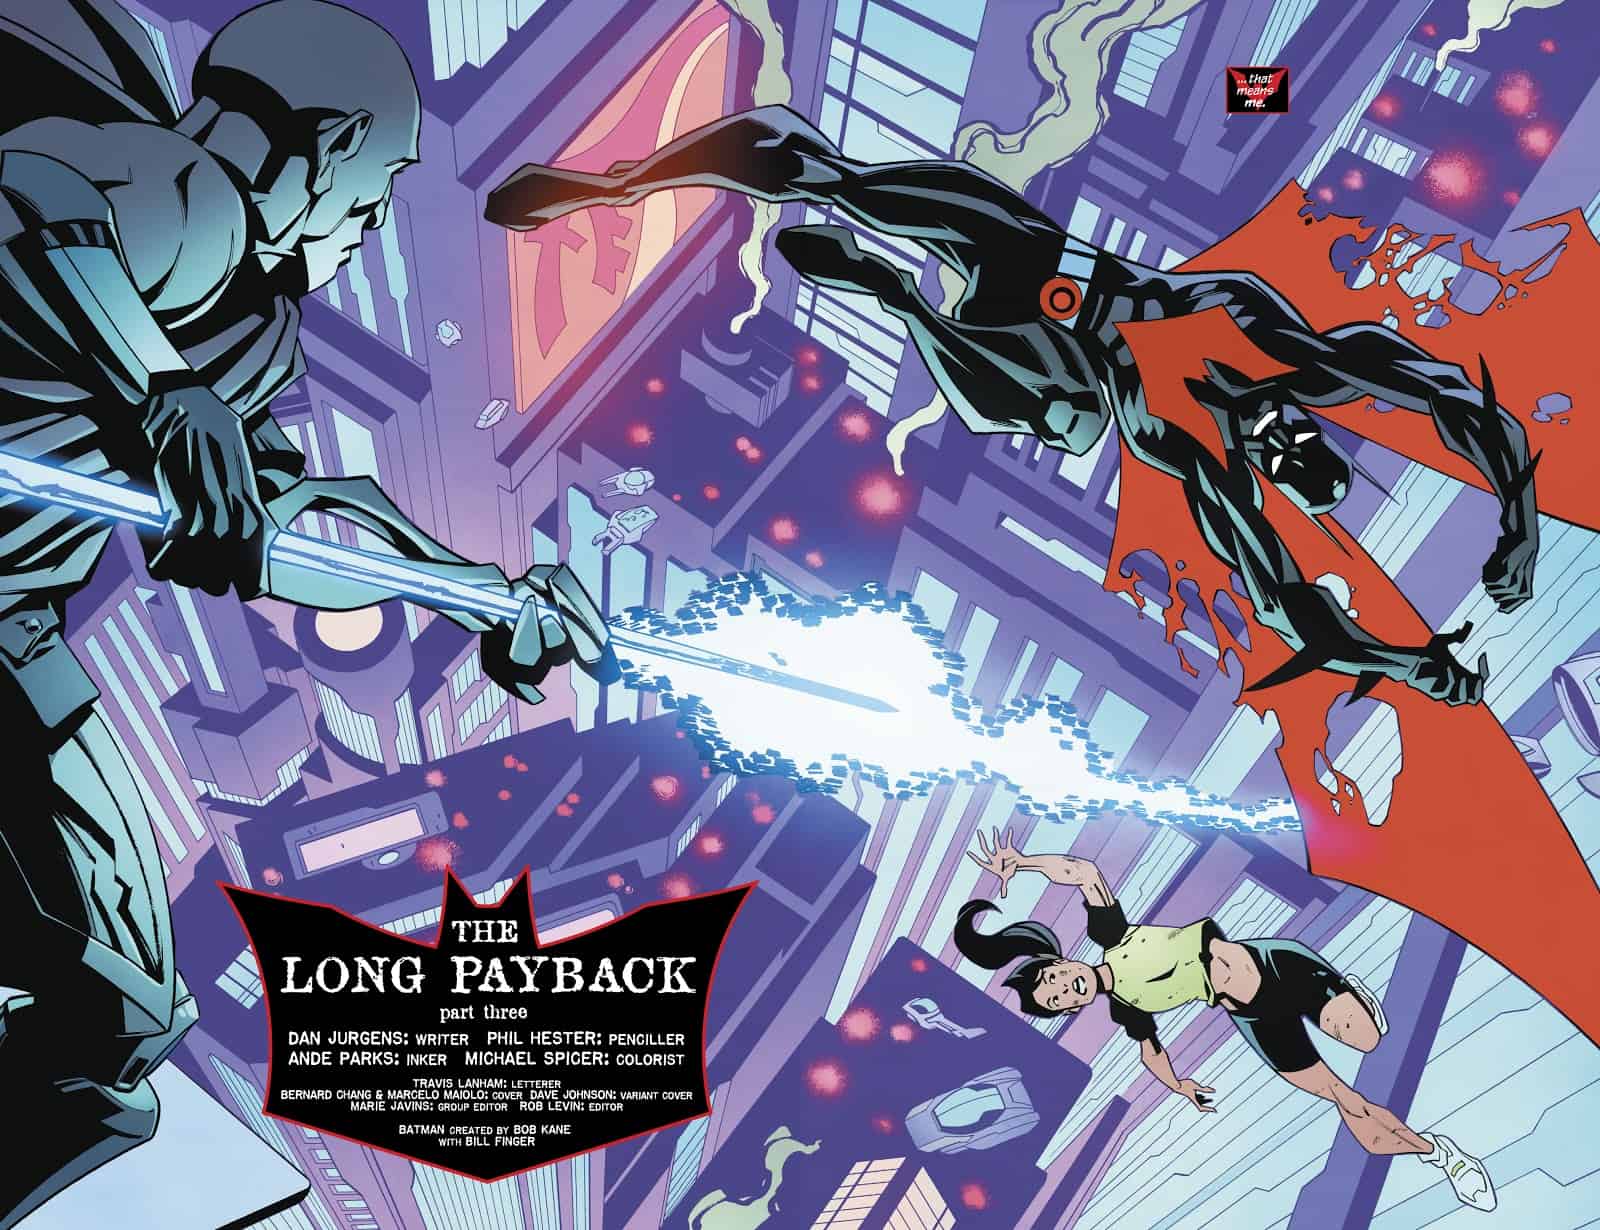 REVIEW: Batman Beyond #16 (The Long Payback Pt. 3) - Comic Watch